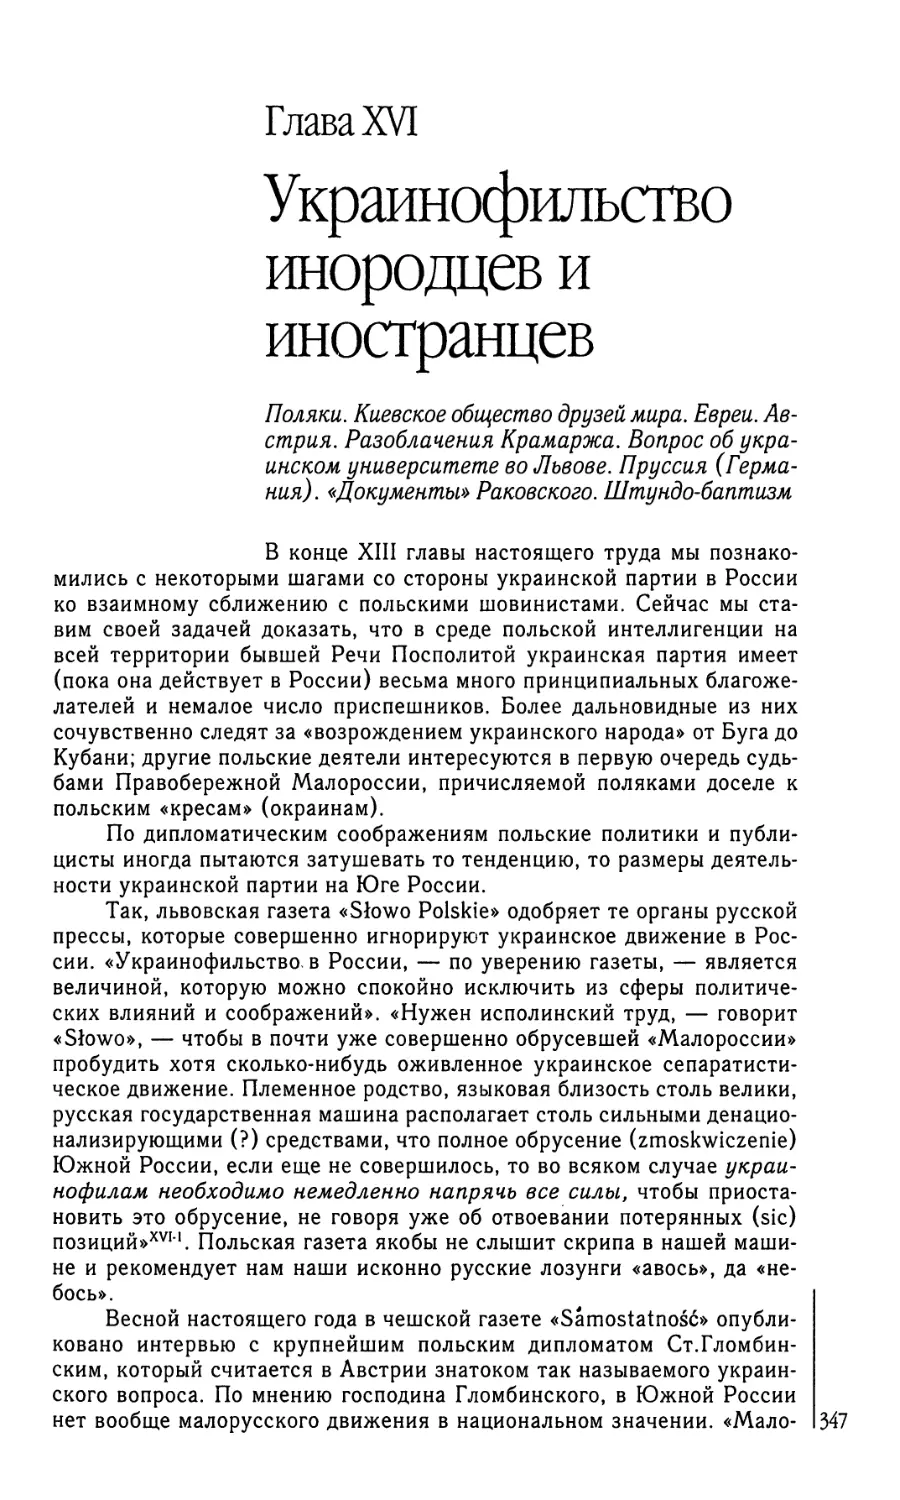 Глава XVI. Украинофильство инородцев и иностранцев